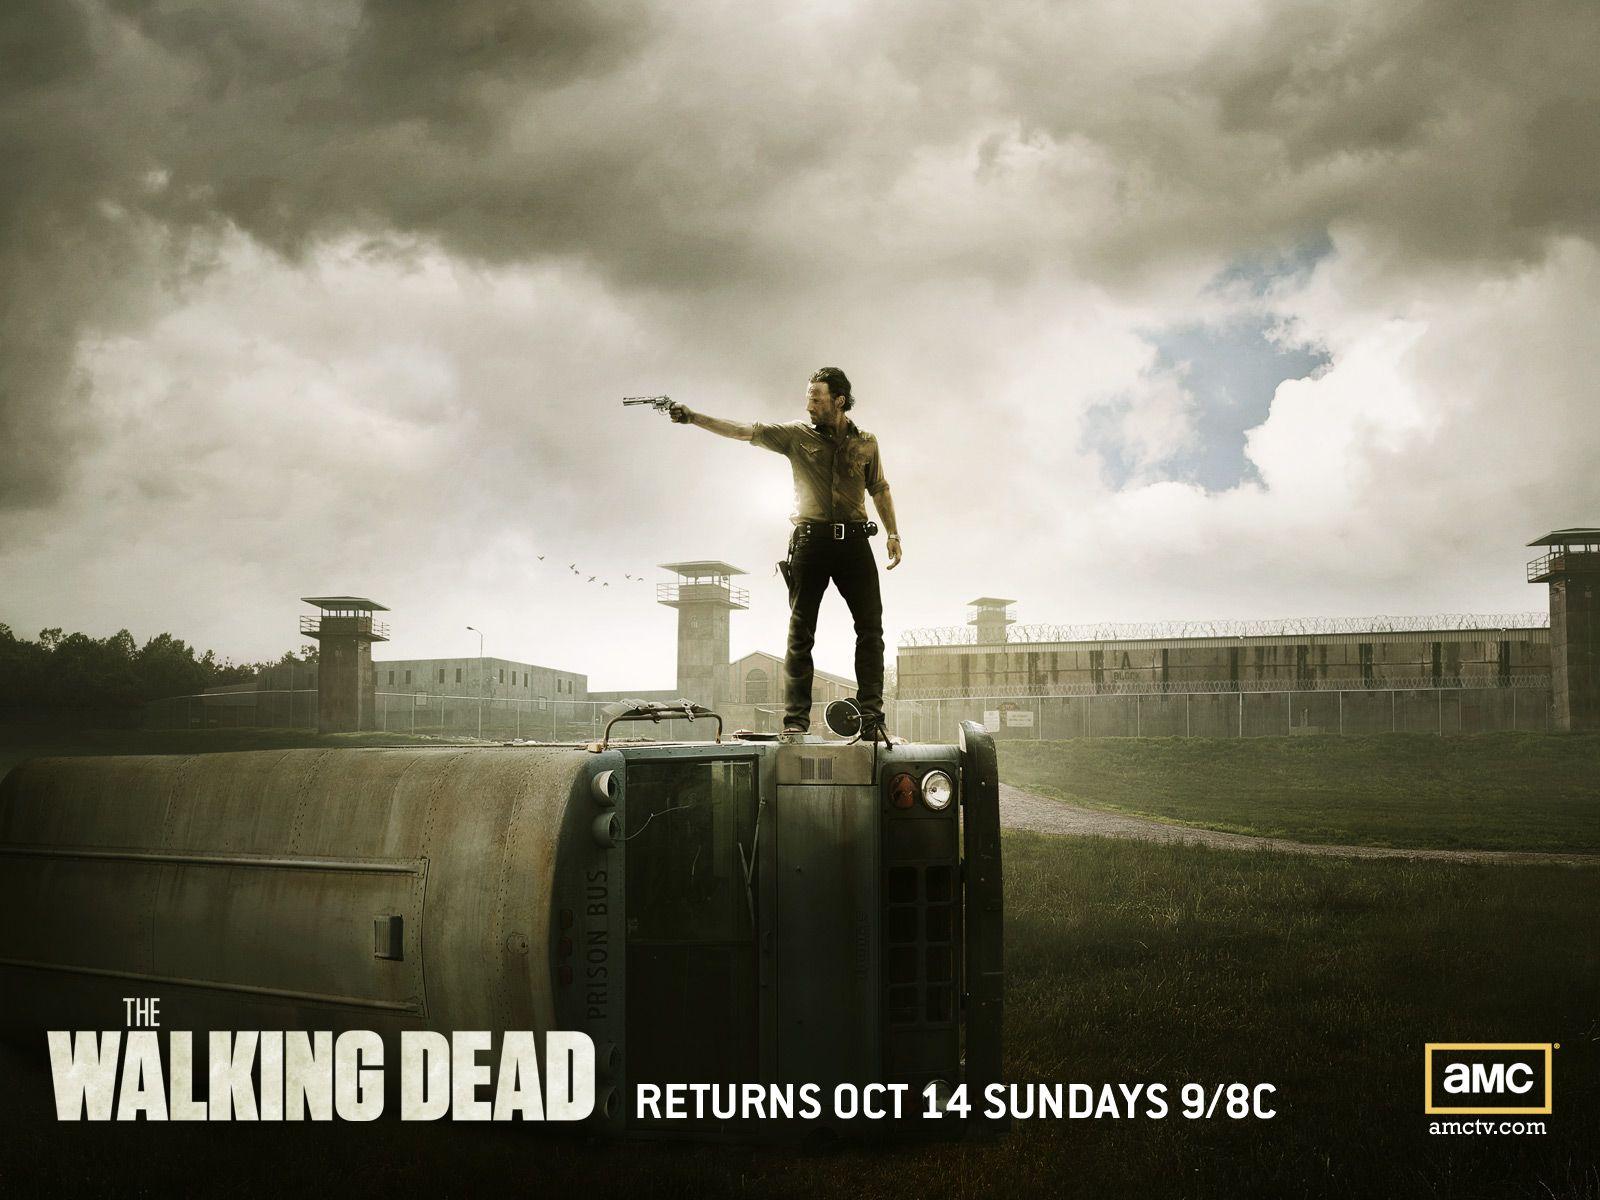 The Walking Dead Season 3 wallpaper